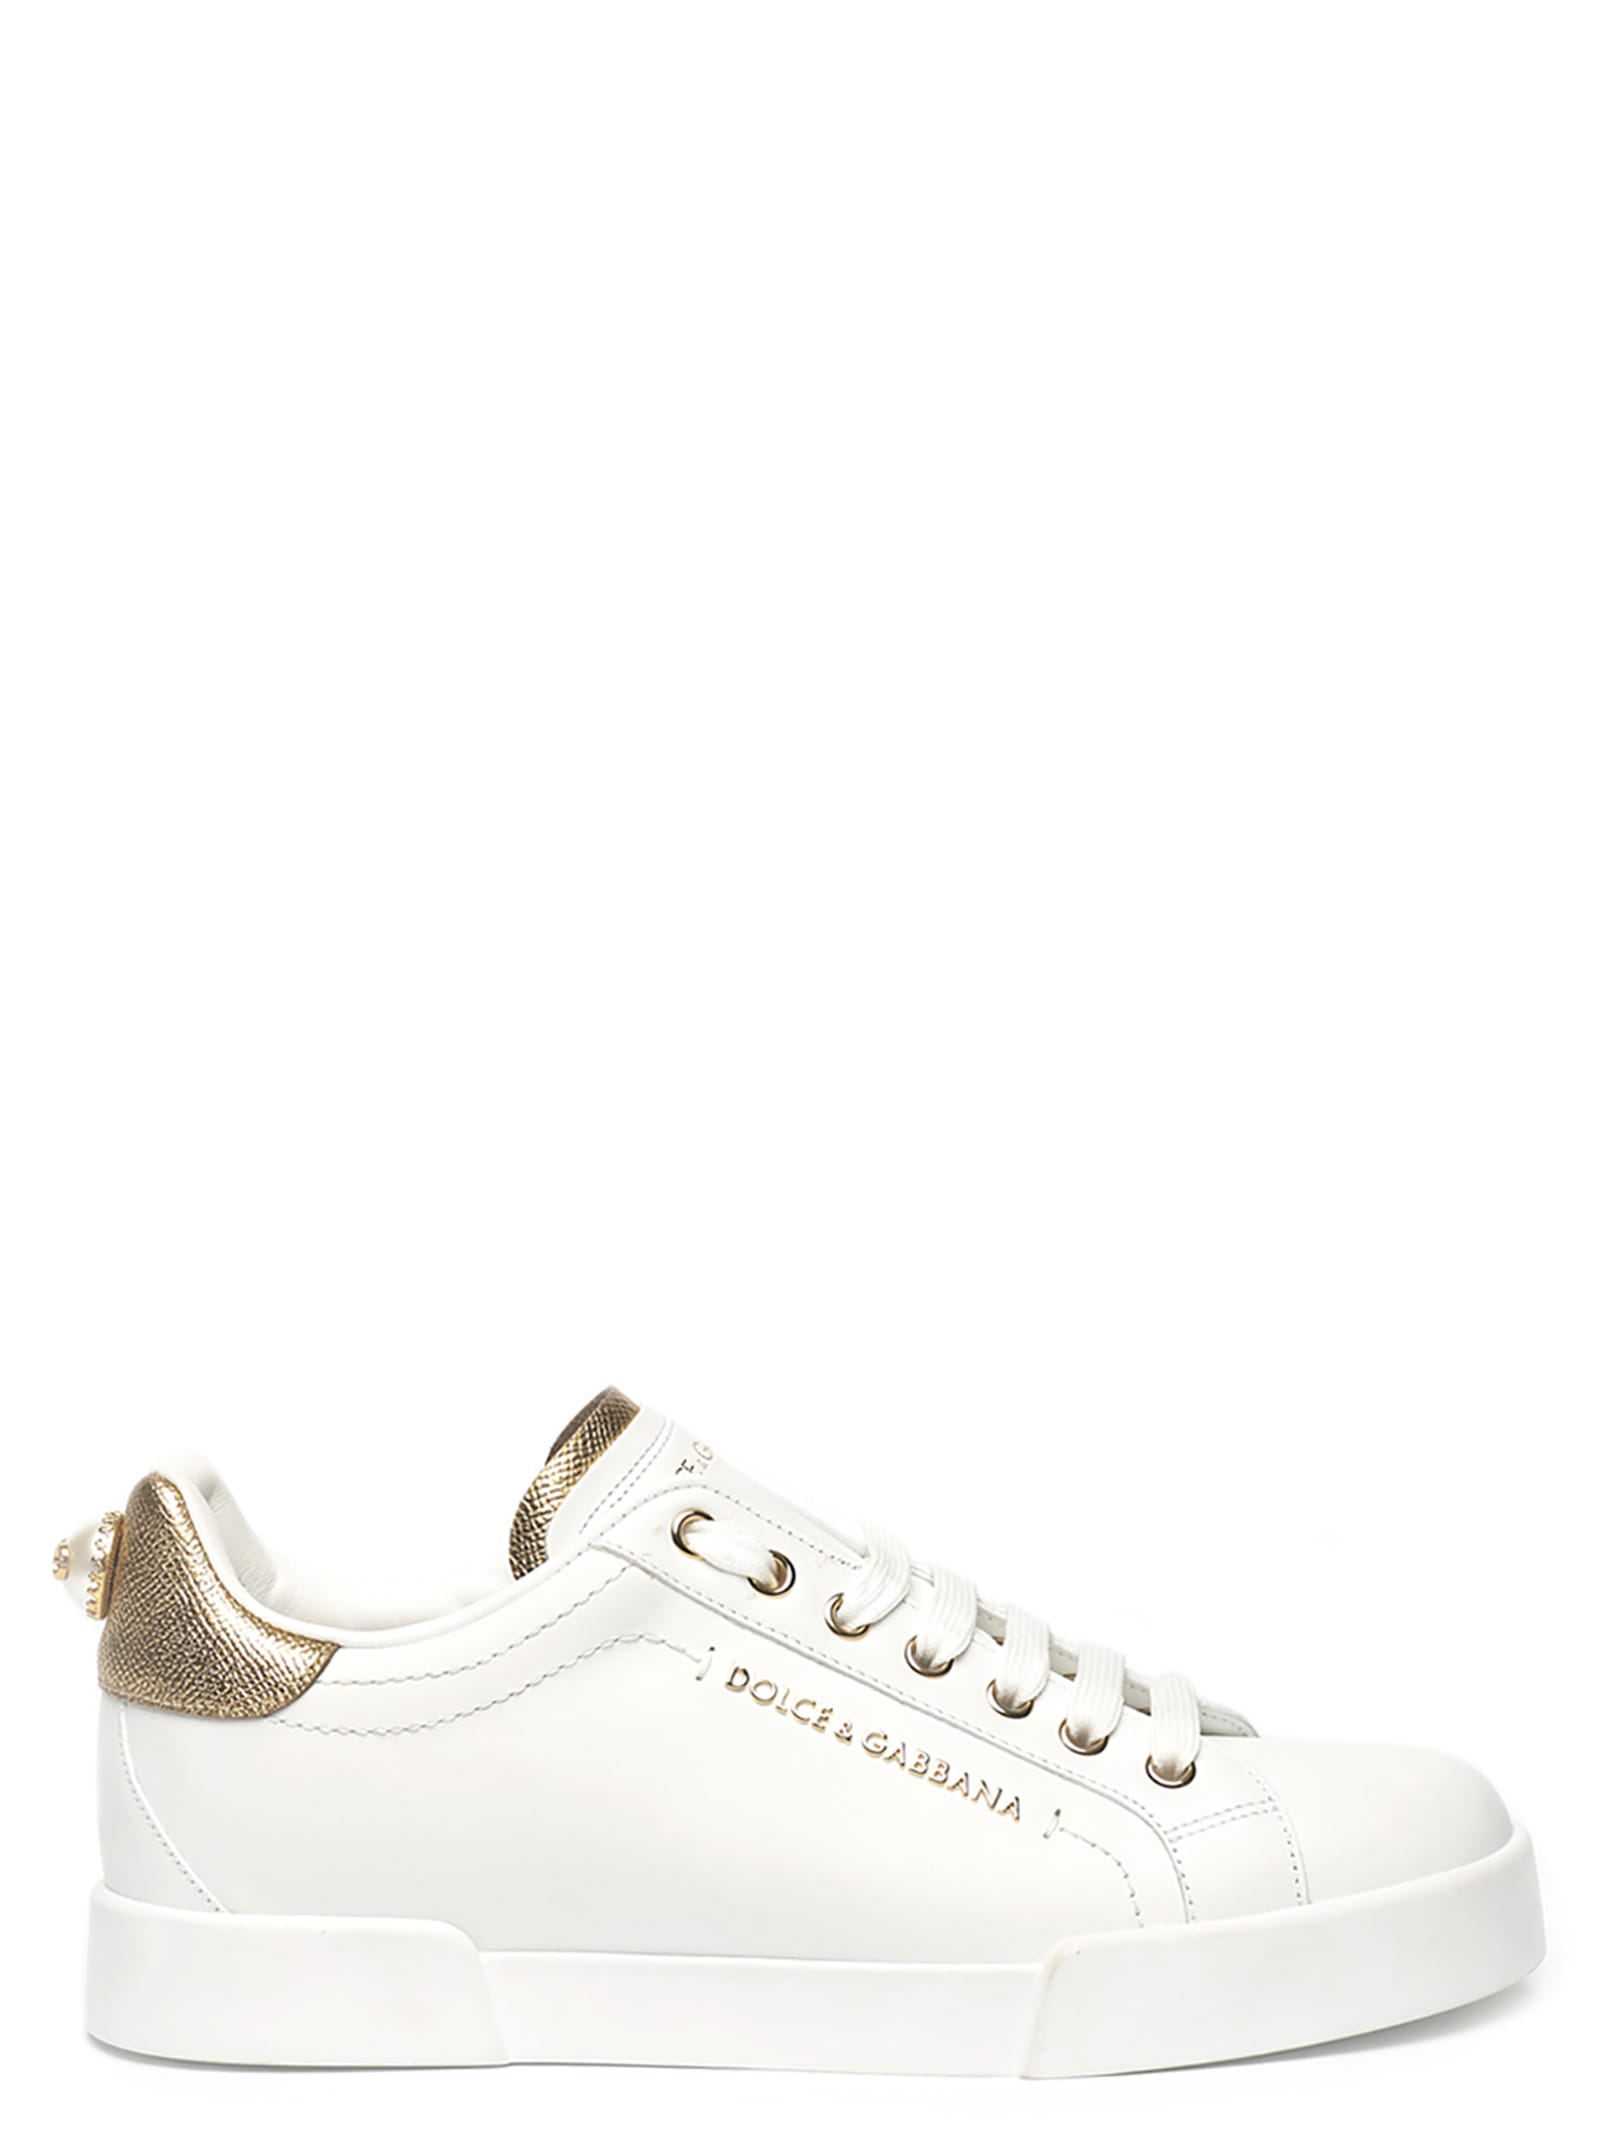 Dolce & Gabbana portofino Sneakers